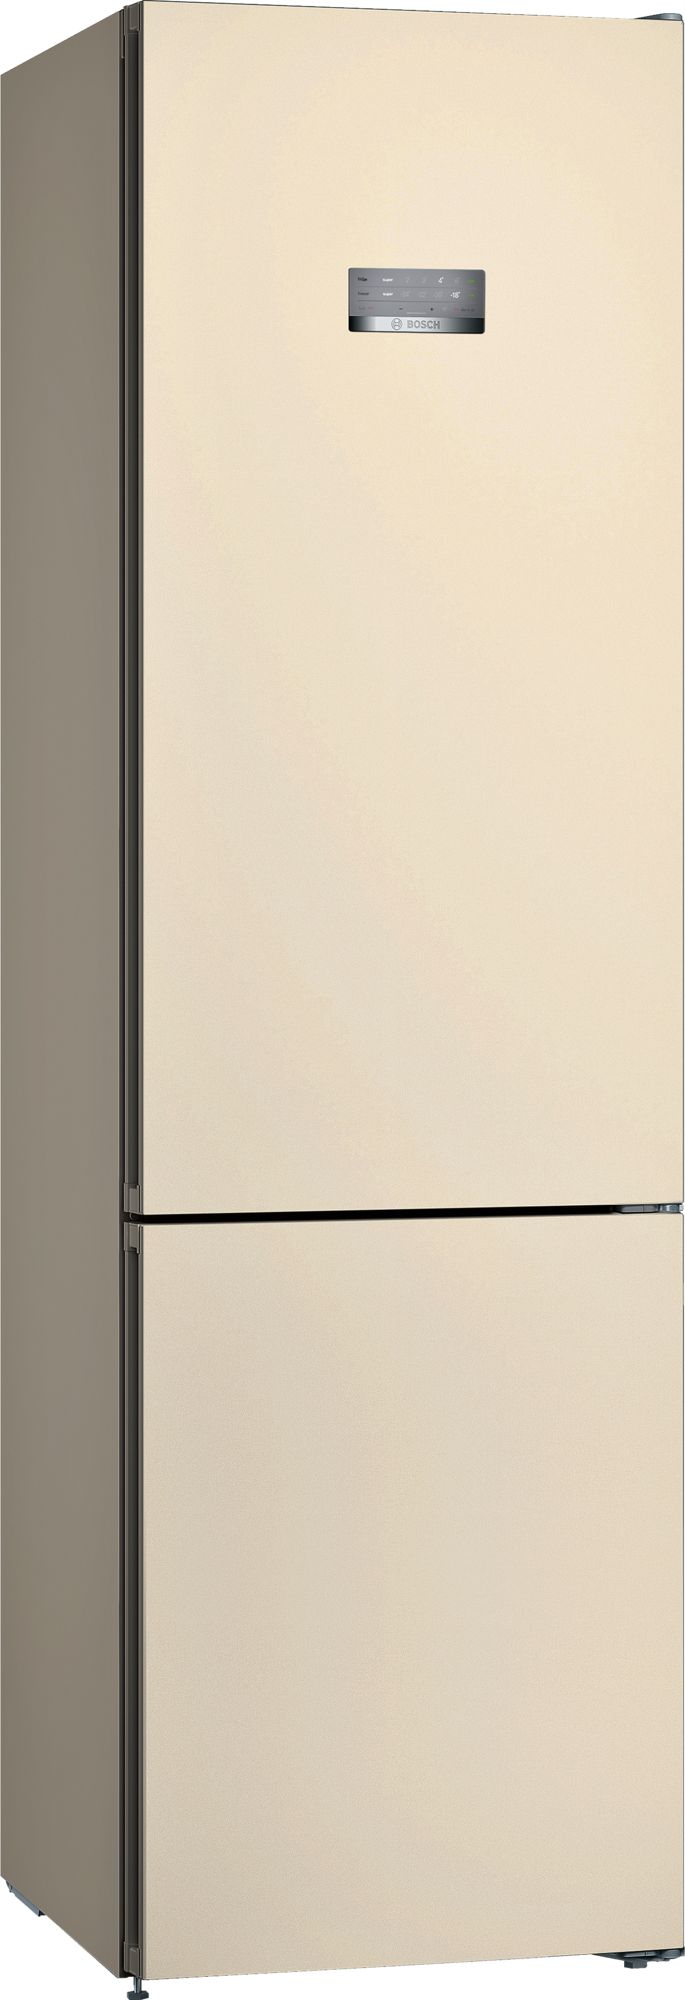 Холодильник Bosch KGN39VK21